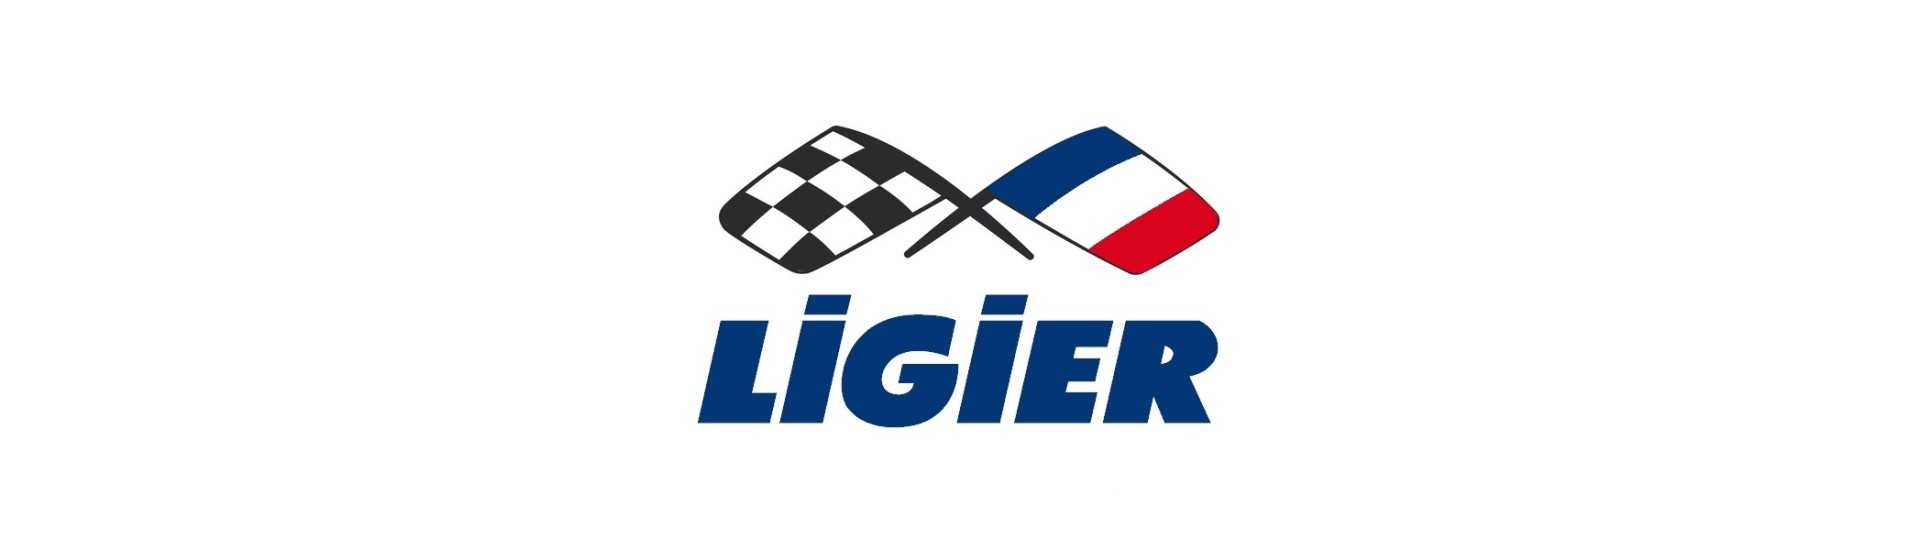 Moyeu + freno disco al mejor precio para coche sin licencia Ligier